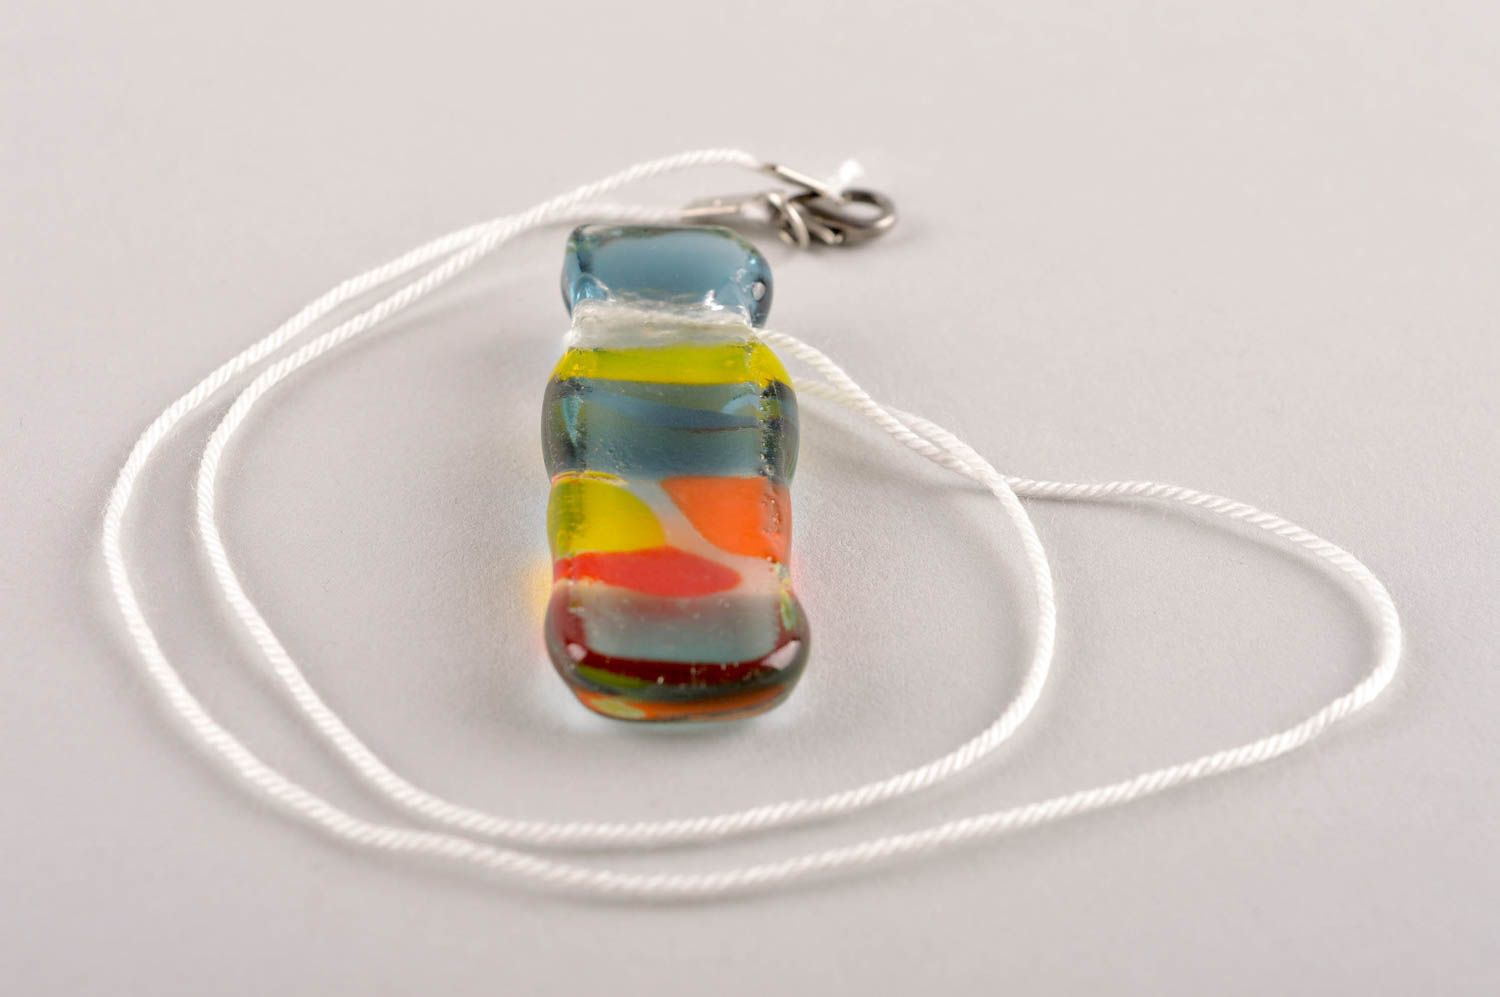 Handmade pendant designer accessory glass pendant for women gift ideas photo 3